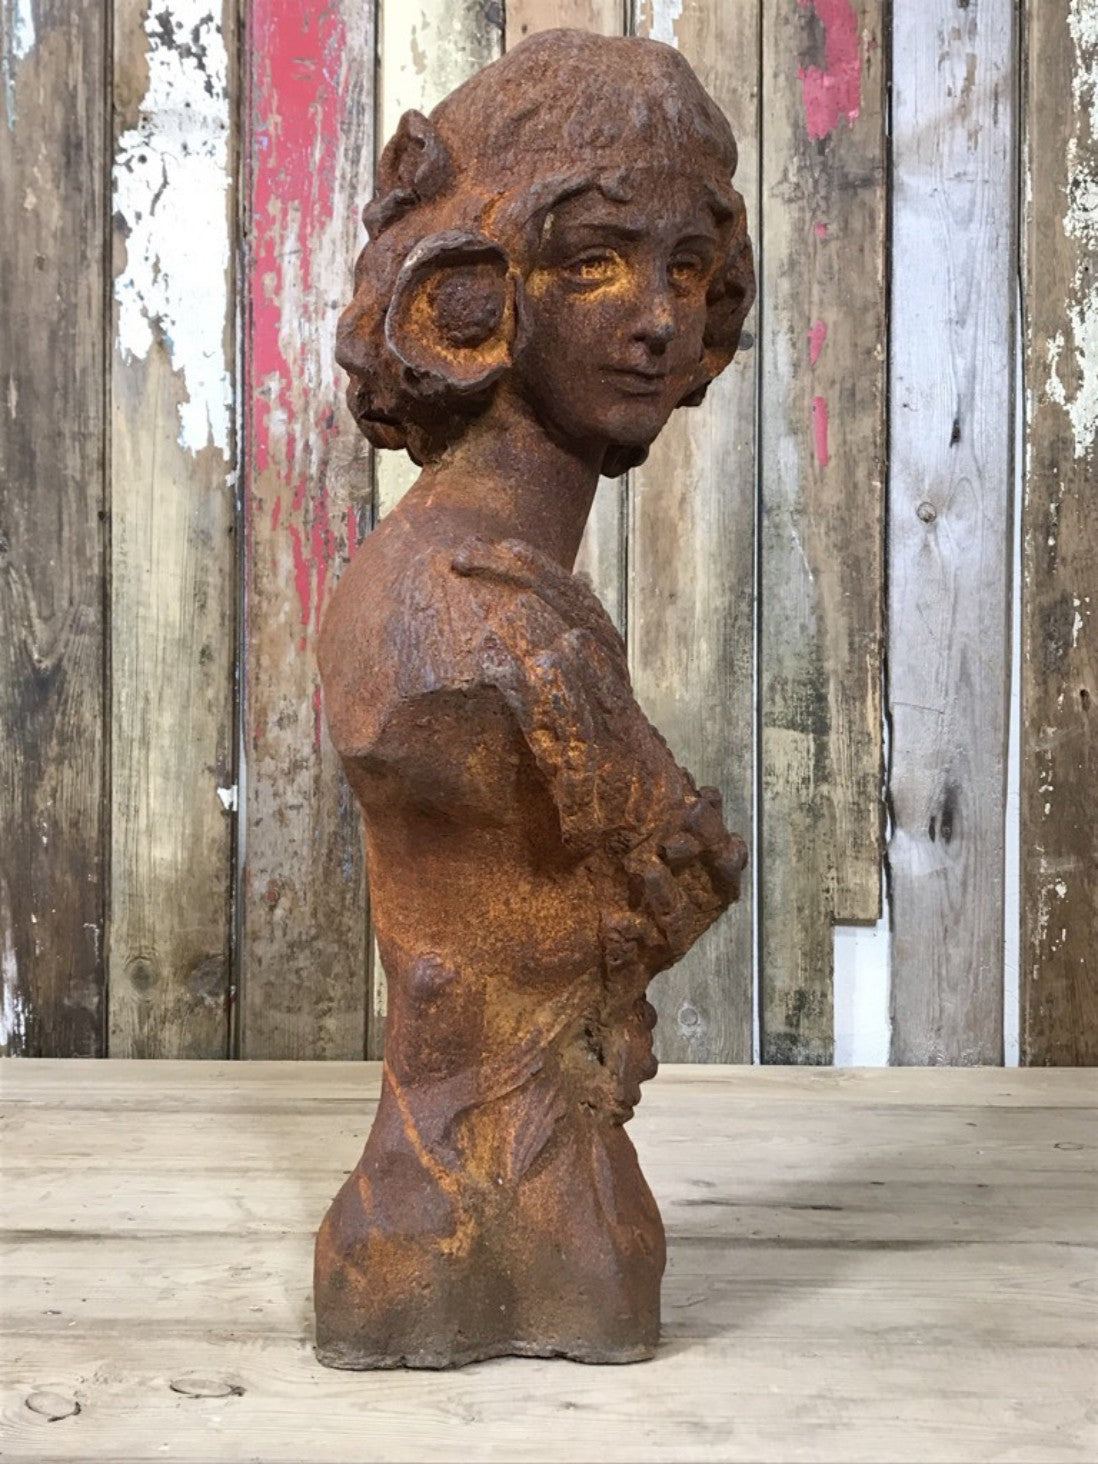 Rusty Heavy Cast Iron Lady Bust Garden Statue Women Head Figure